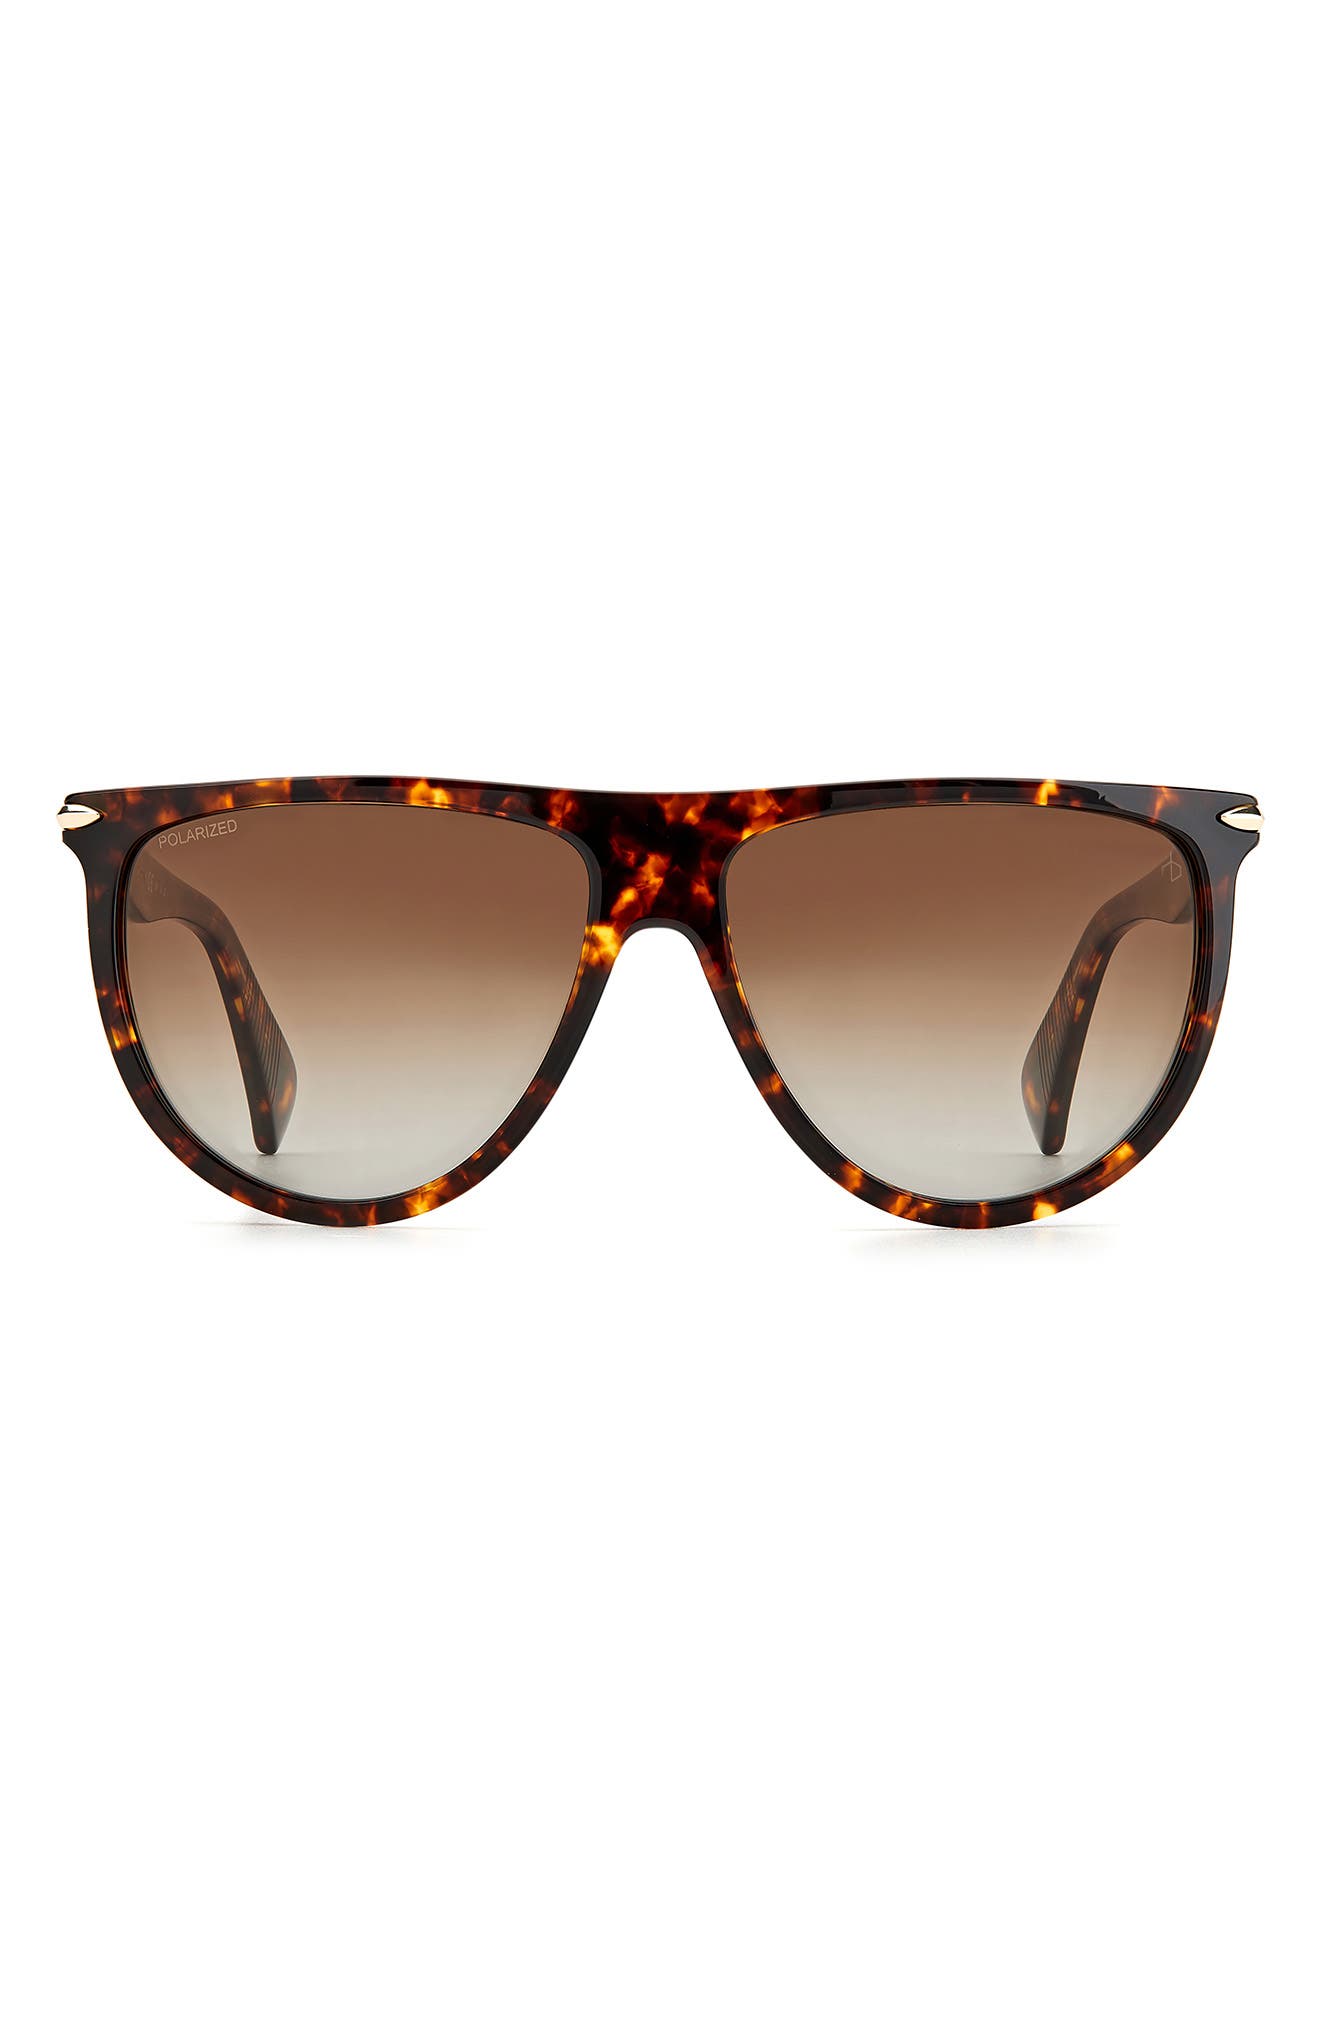 Rag  bone Sunglasses for Women | Nordstrom